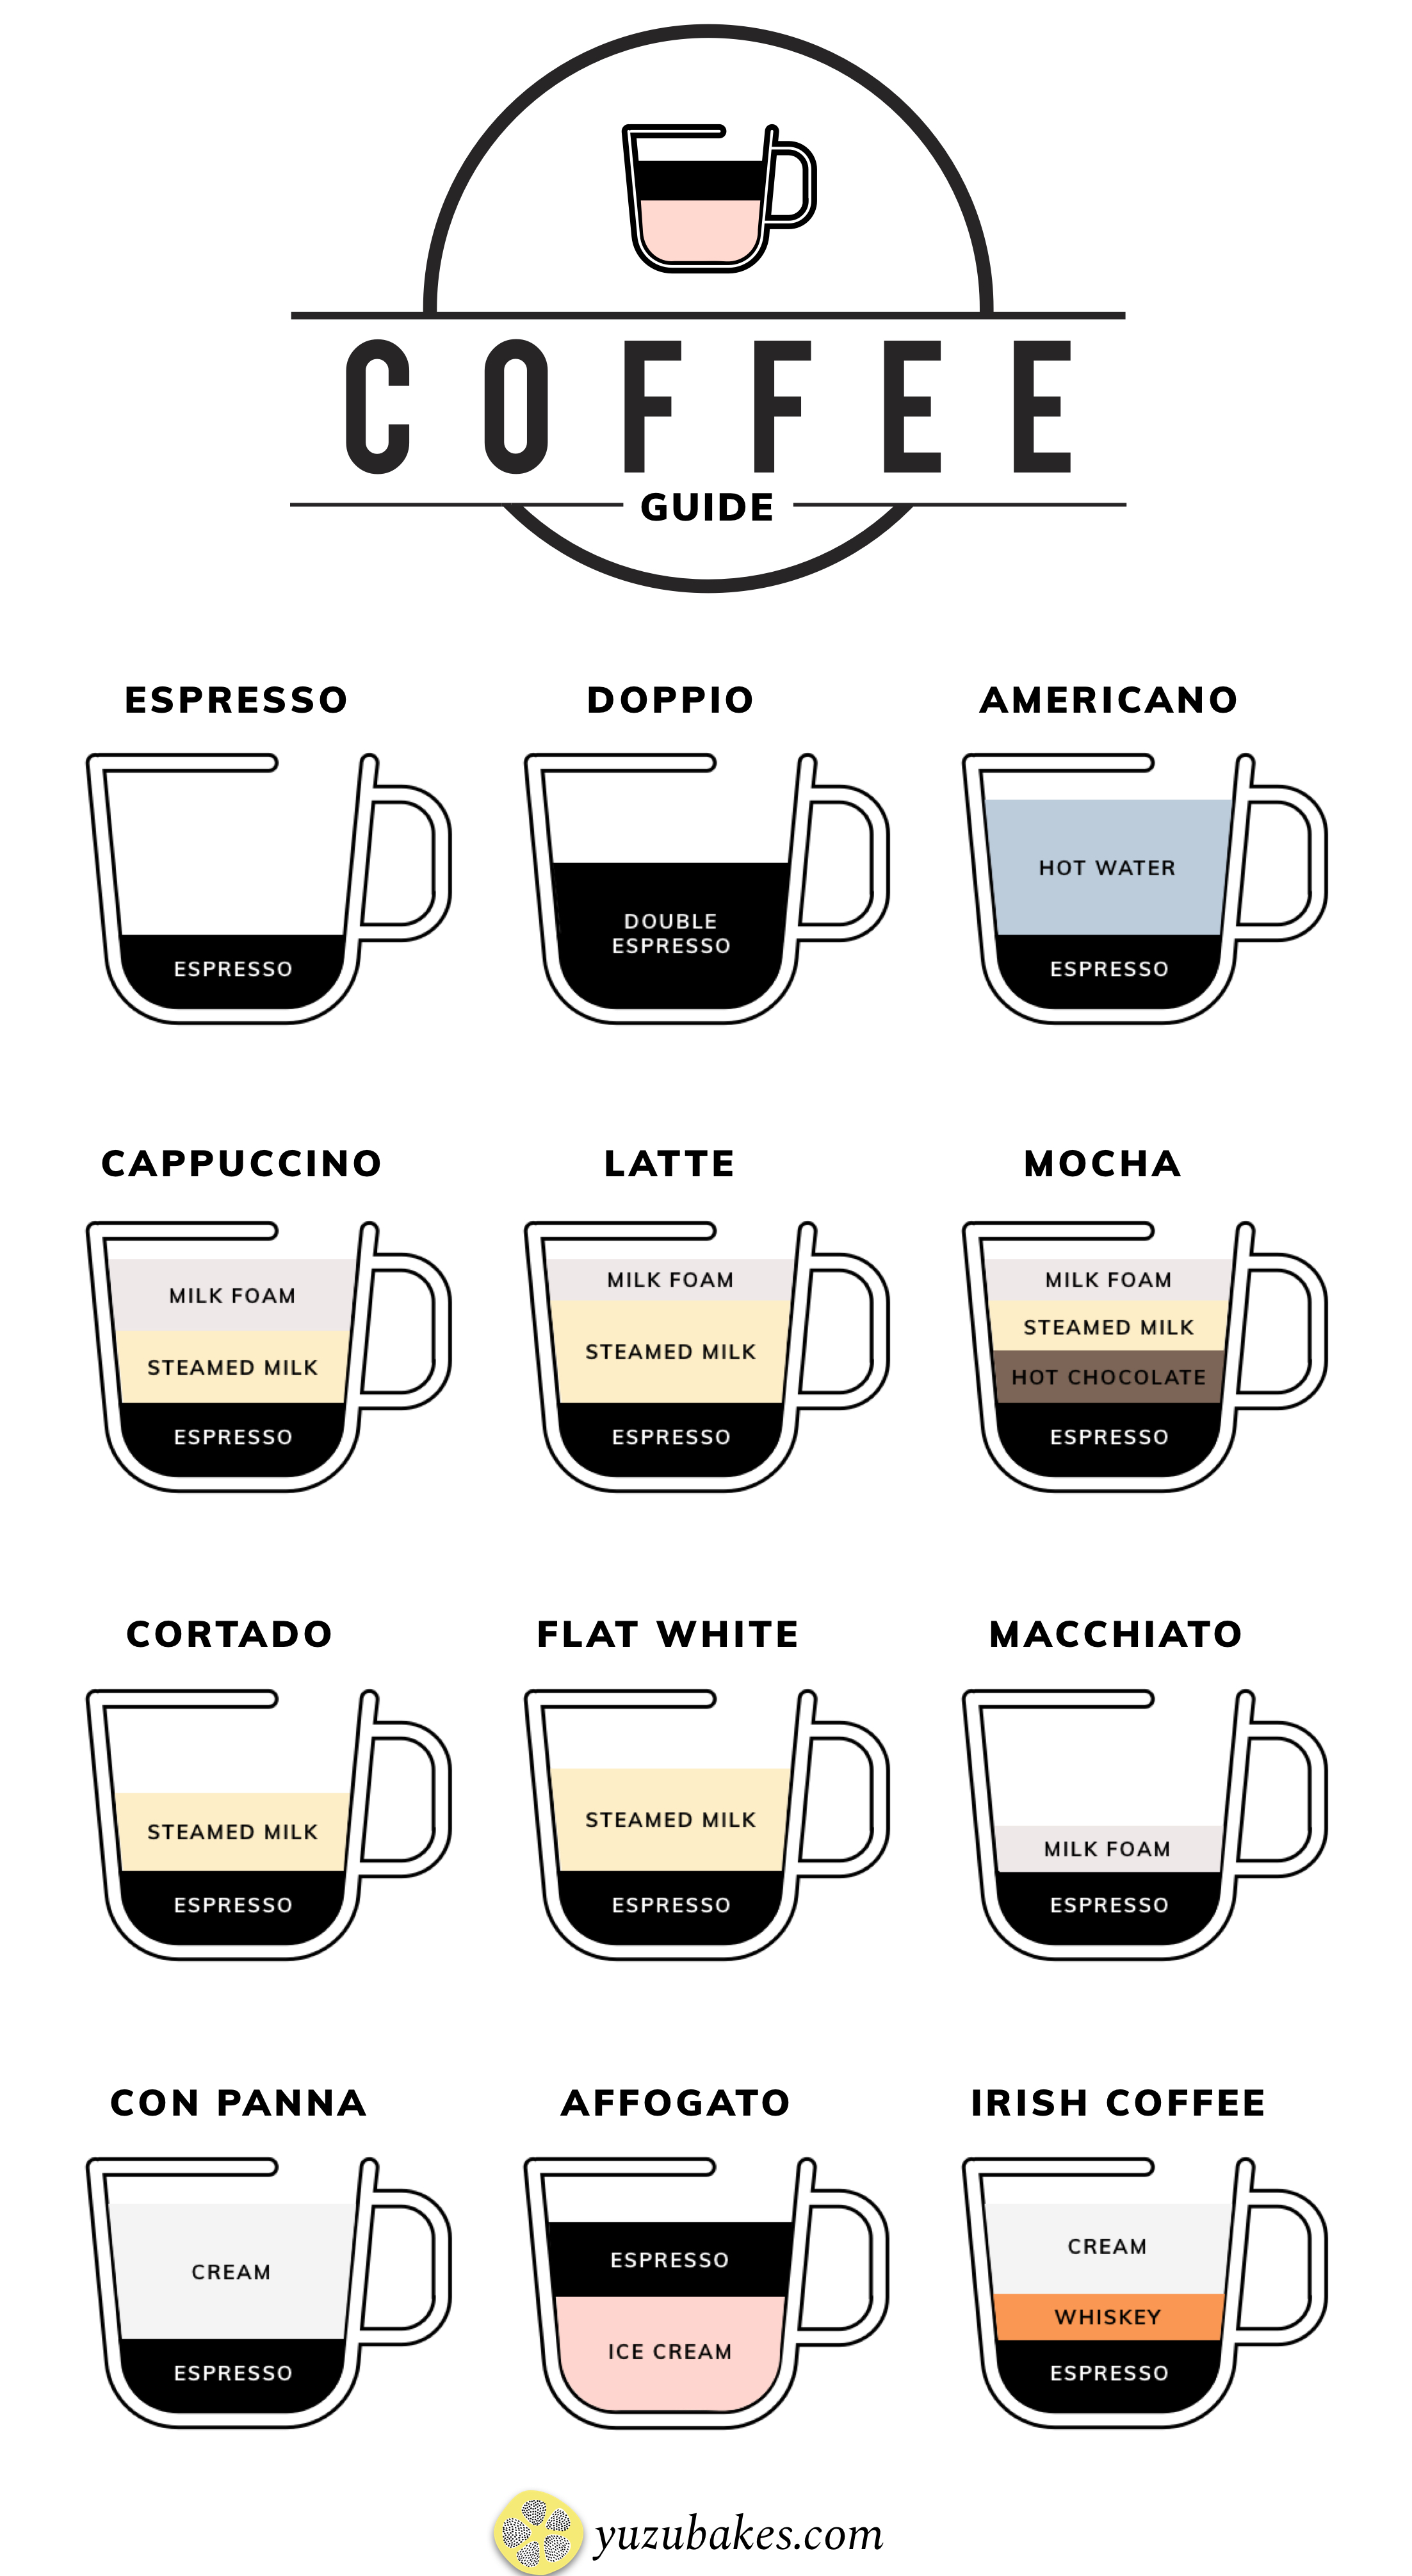 Espresso Lungo vs Americano